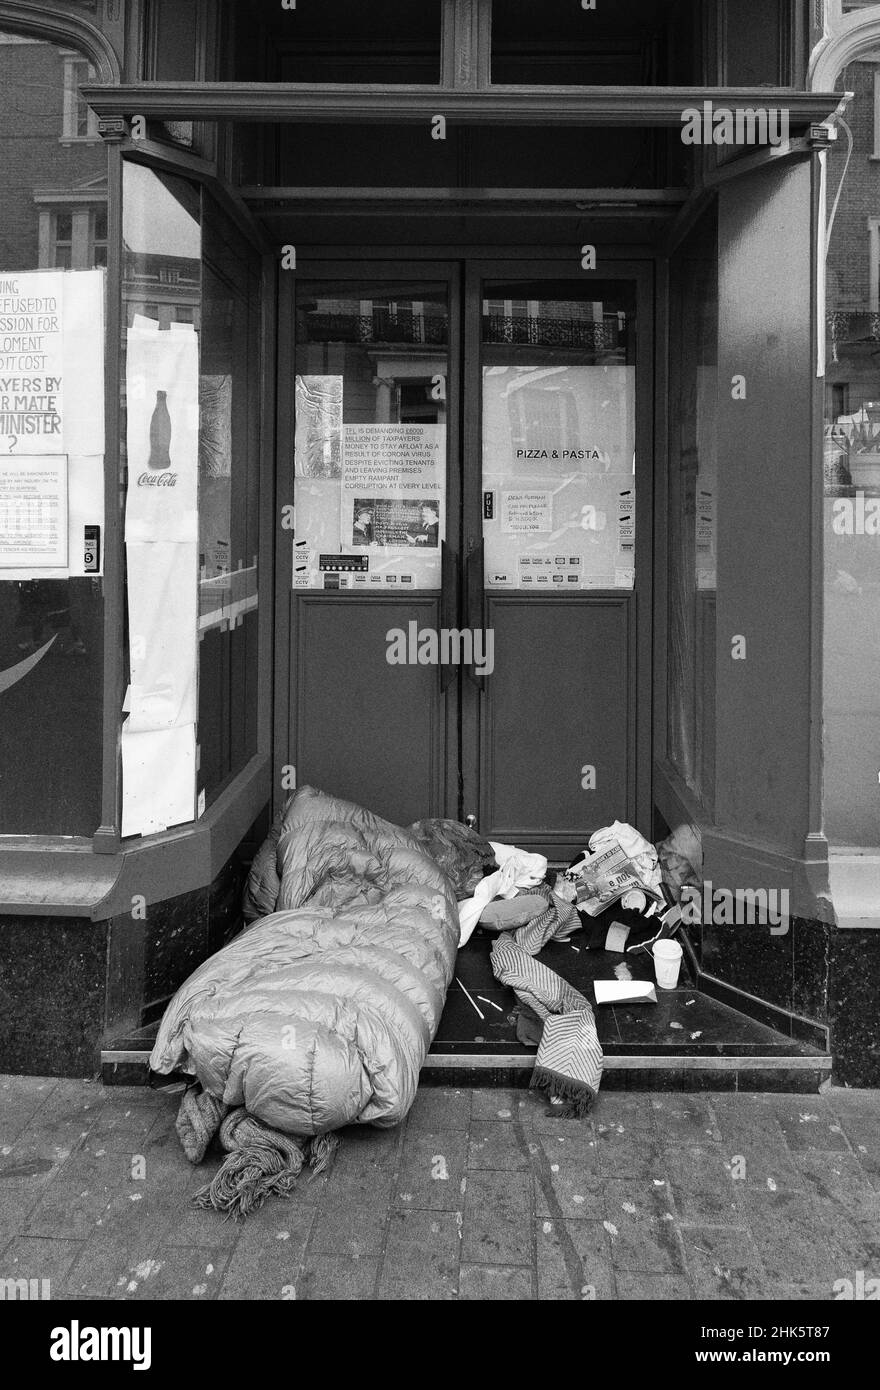 Homeless UK; una persona che dorme in modo ruvido in una porta, South Kensington, Londra UK; homelessness Londra Gran Bretagna a causa della povertà UK. Foto Stock